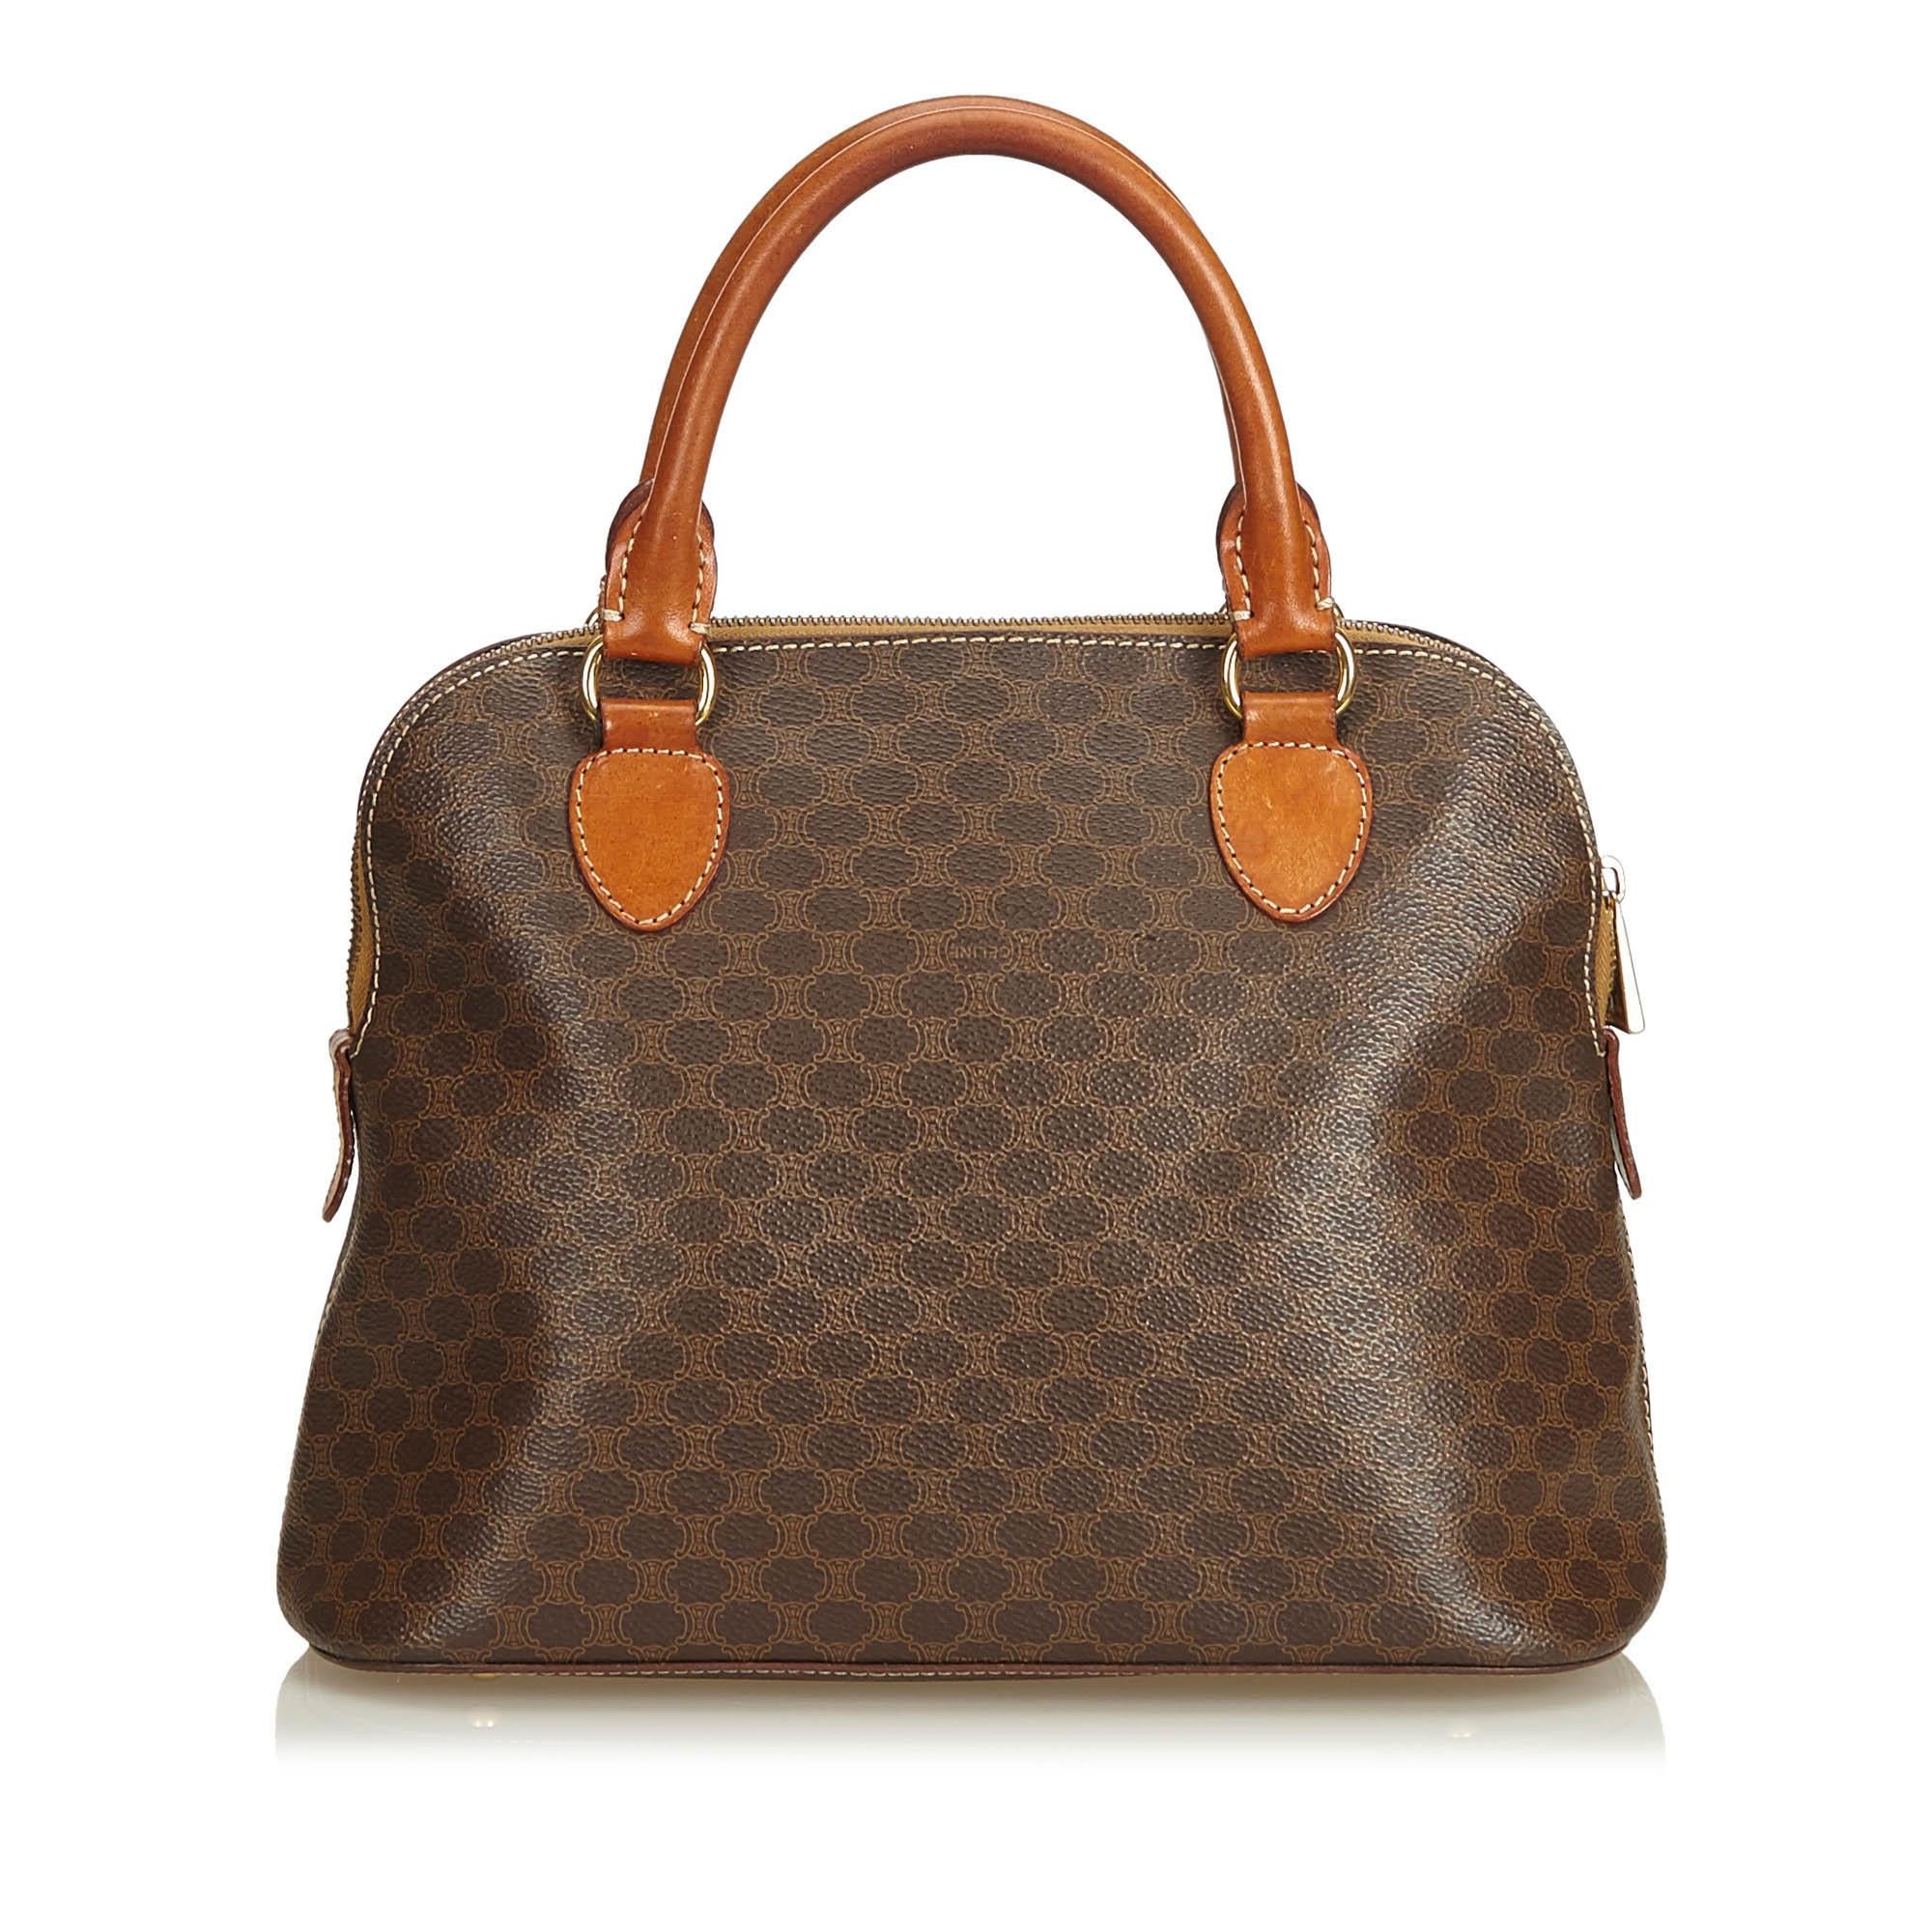 Celine Brown Macadam Handbag In Good Condition For Sale In Orlando, FL